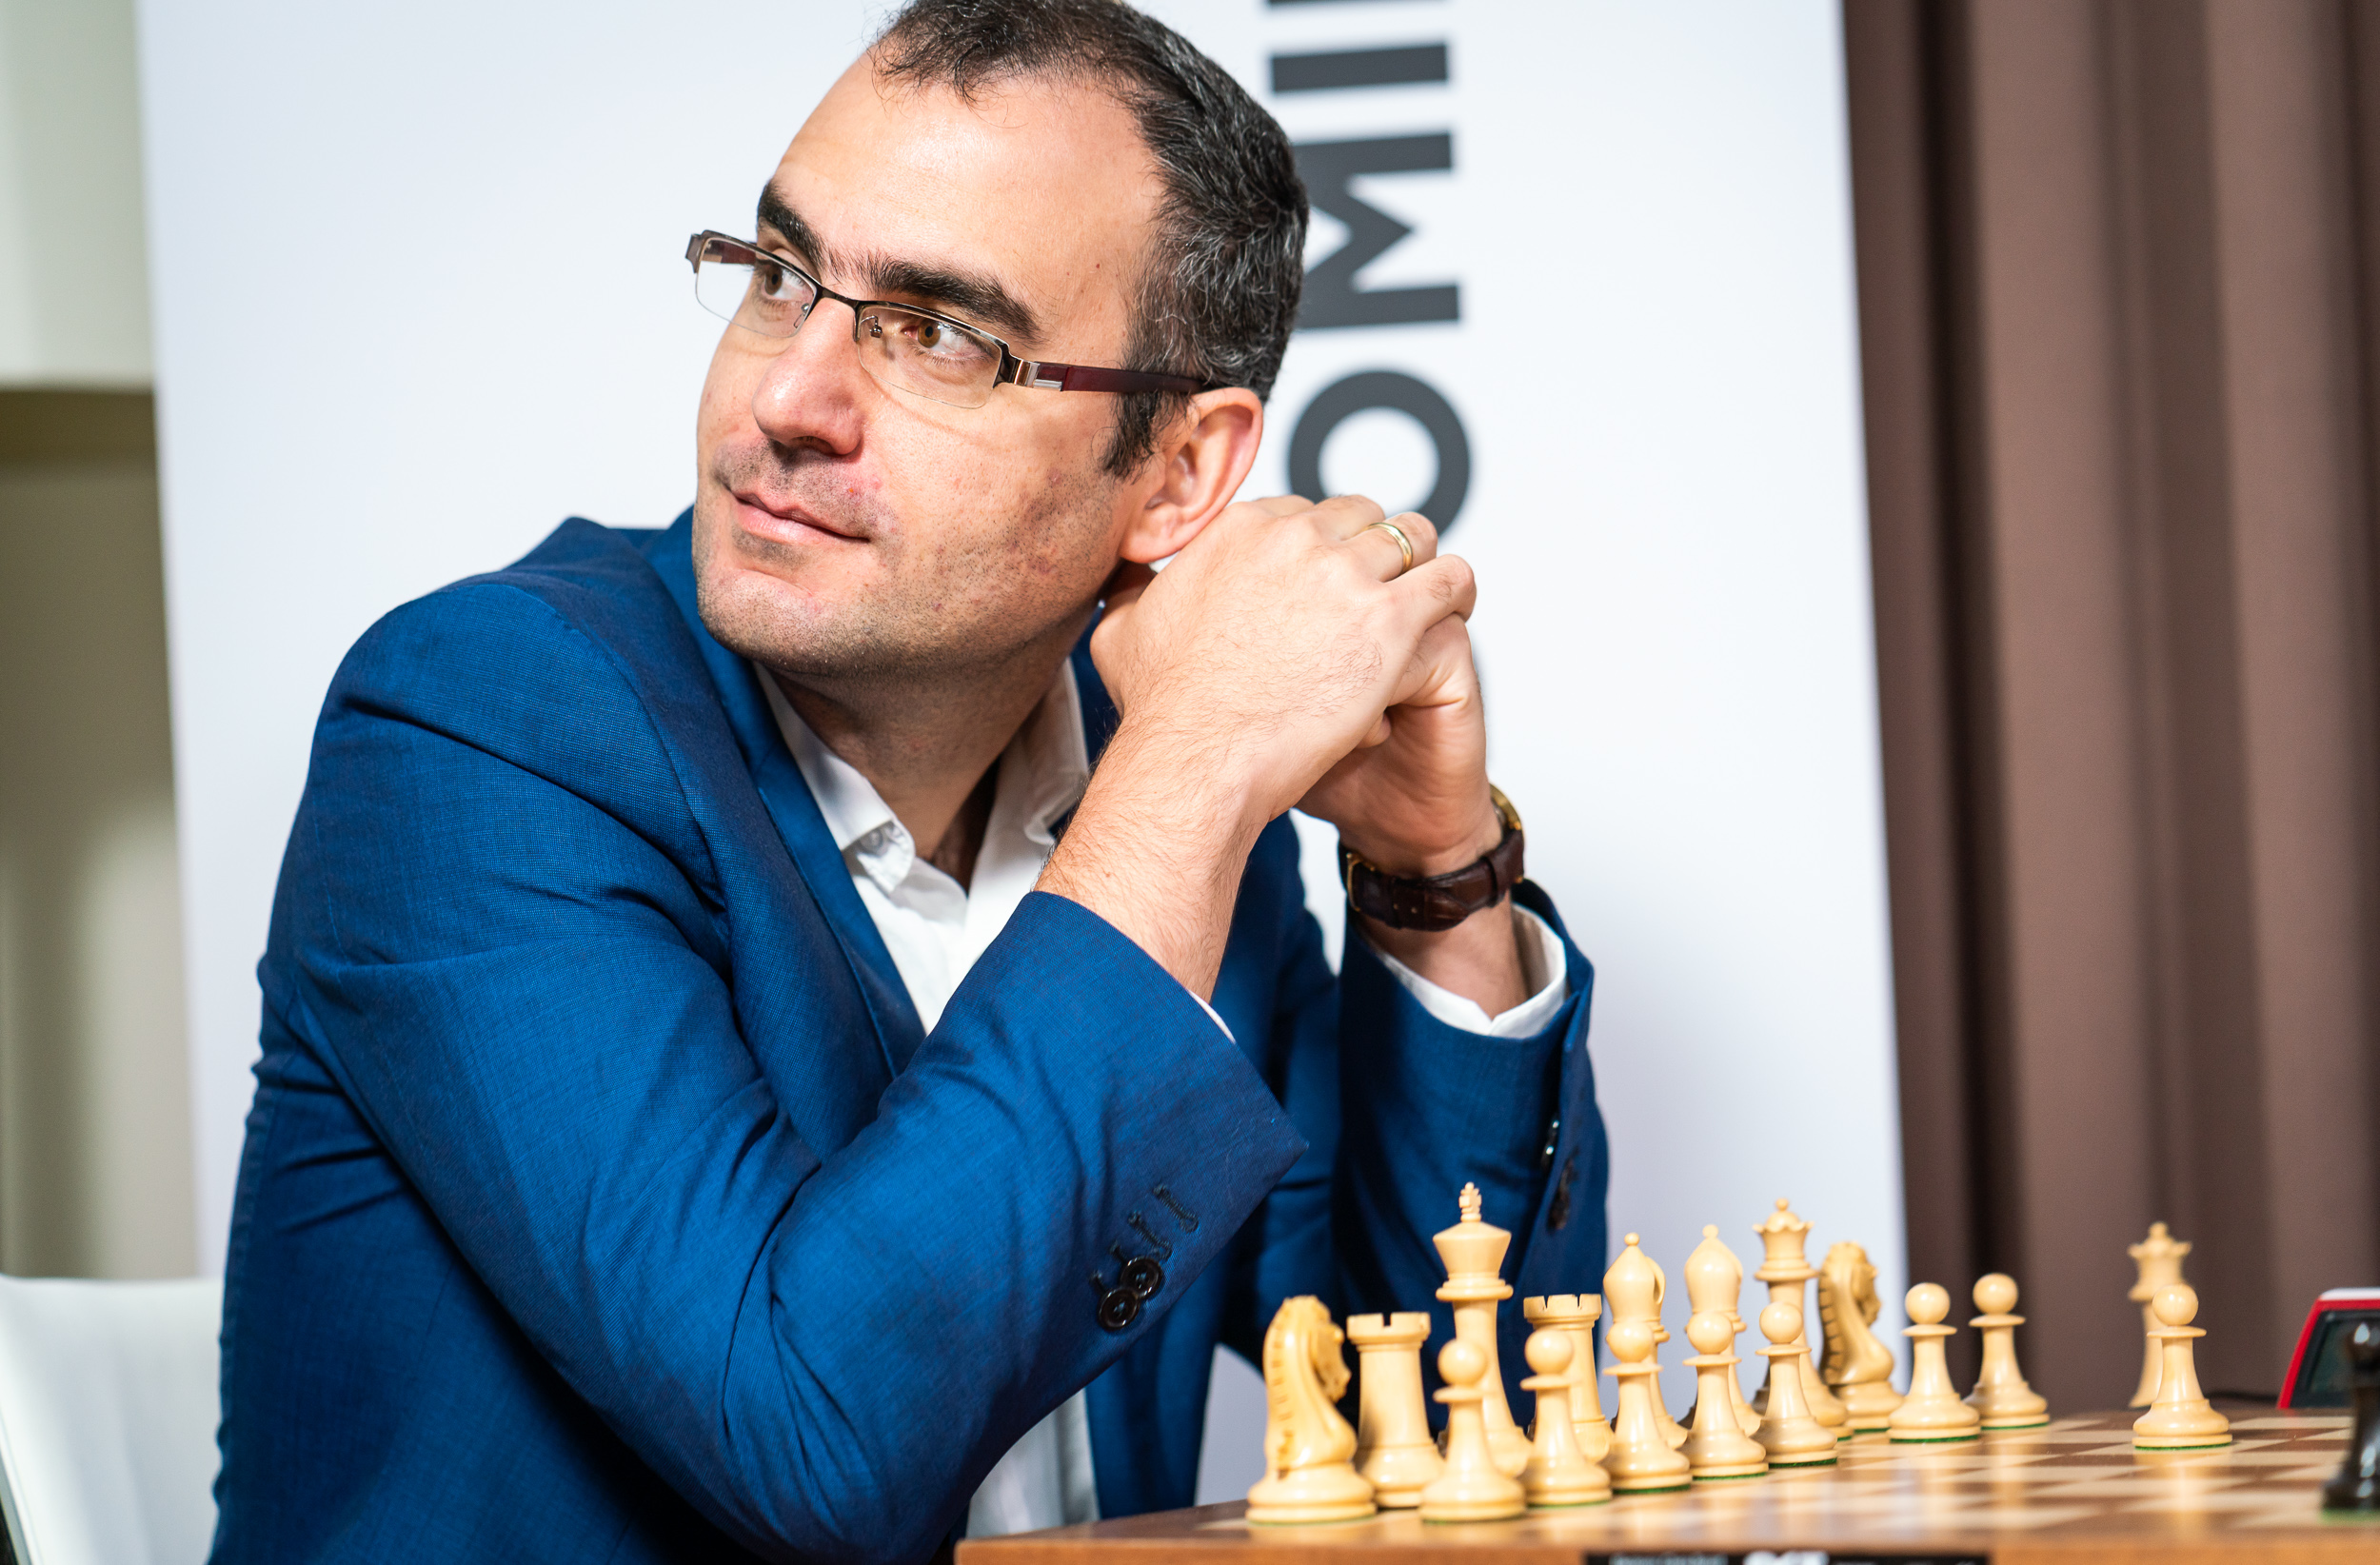 Leinier Domínguez queda corto a la imagen de Capablanca en el ajedrez